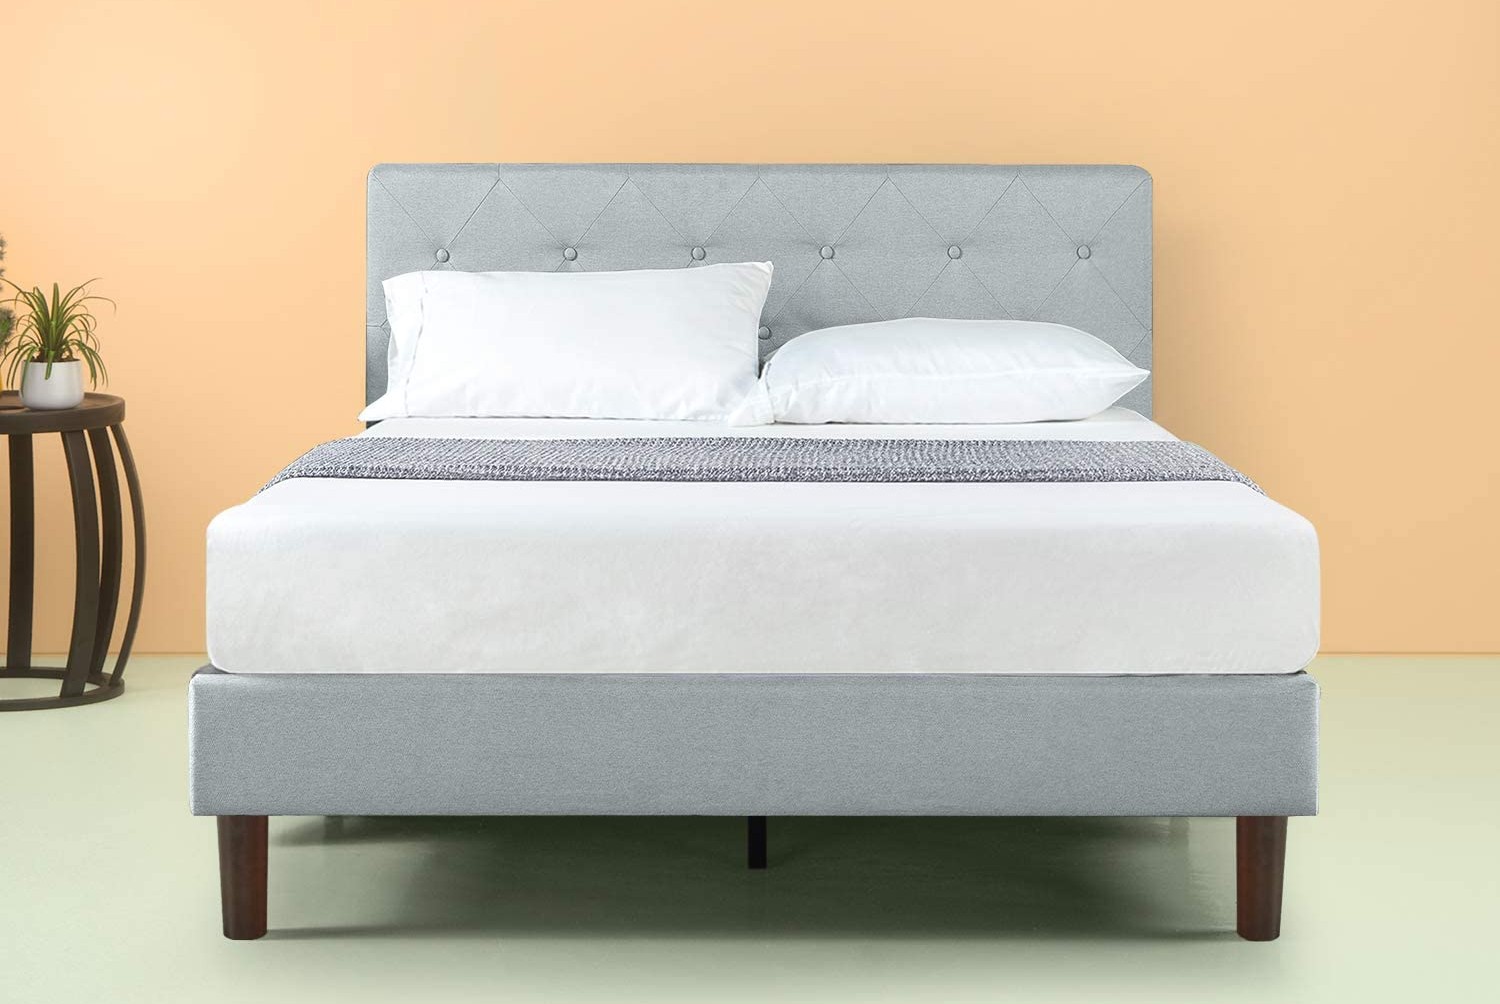 Best Platform Bed Frame